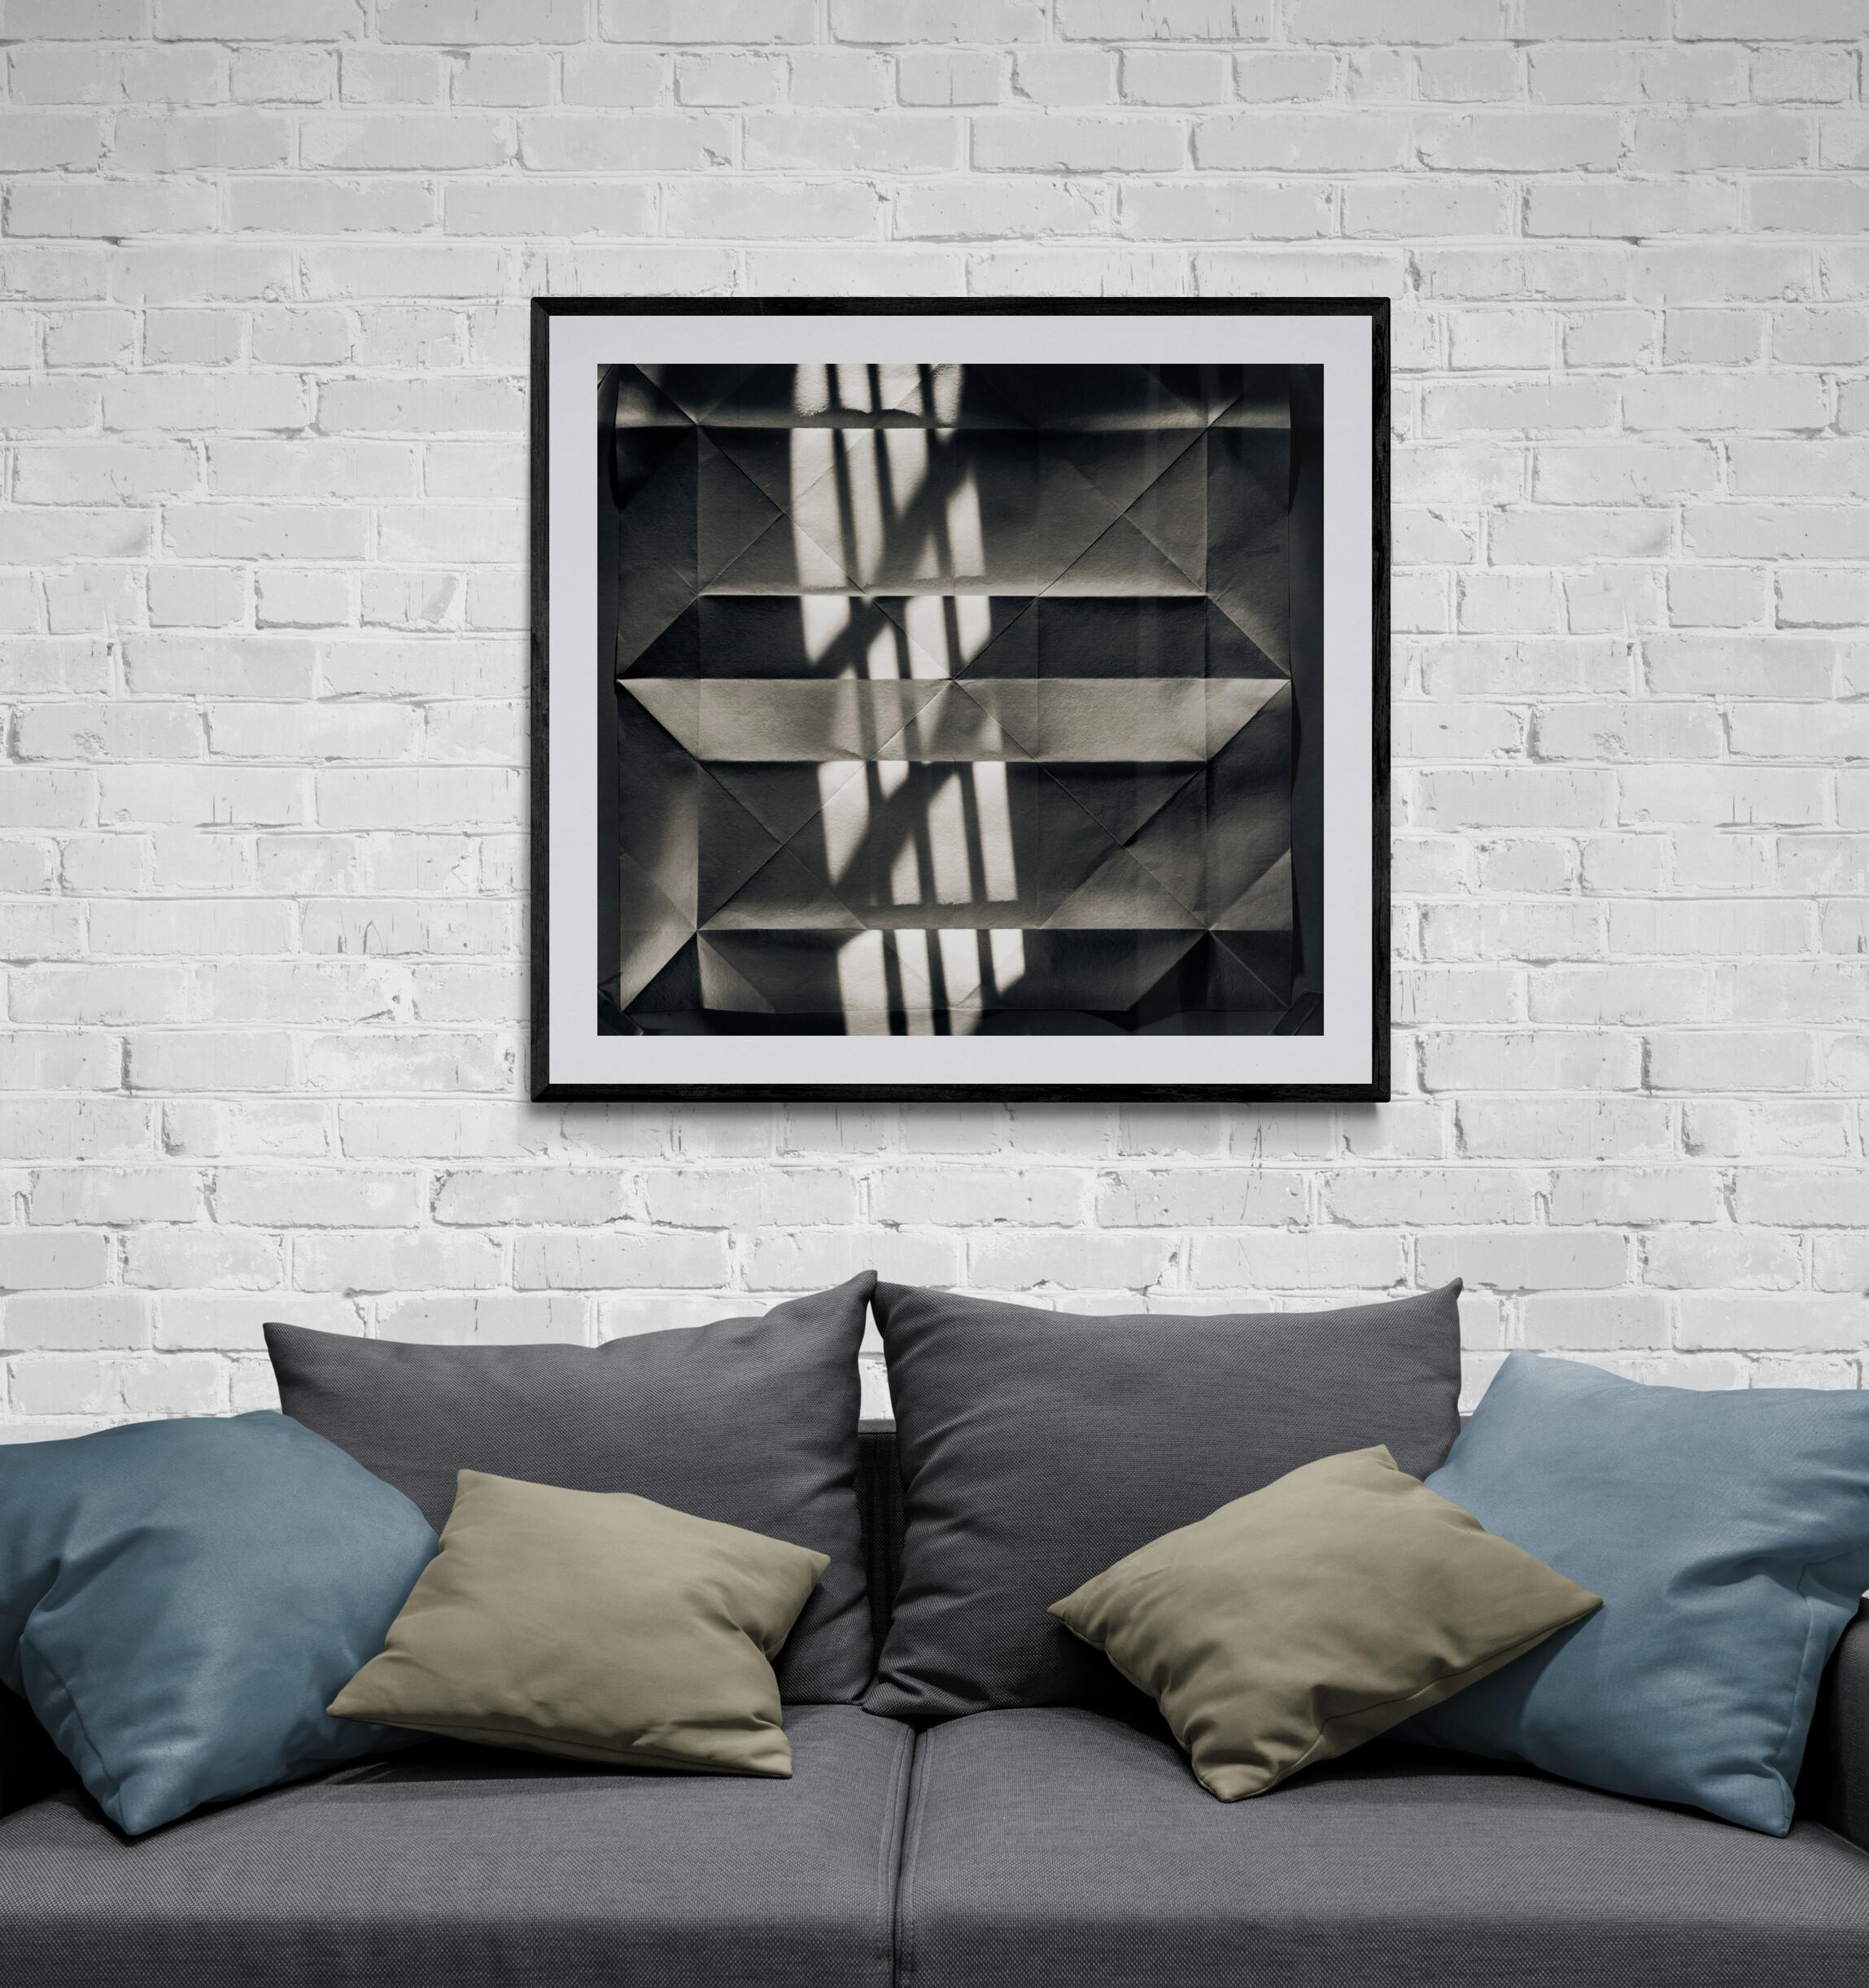  Abstrakte Fotografie in Schwarz-Weiß in limitierter Auflage  - Origami Klappdeckel #38 (Geometrische Abstraktion), Photograph, von Howard Lewis